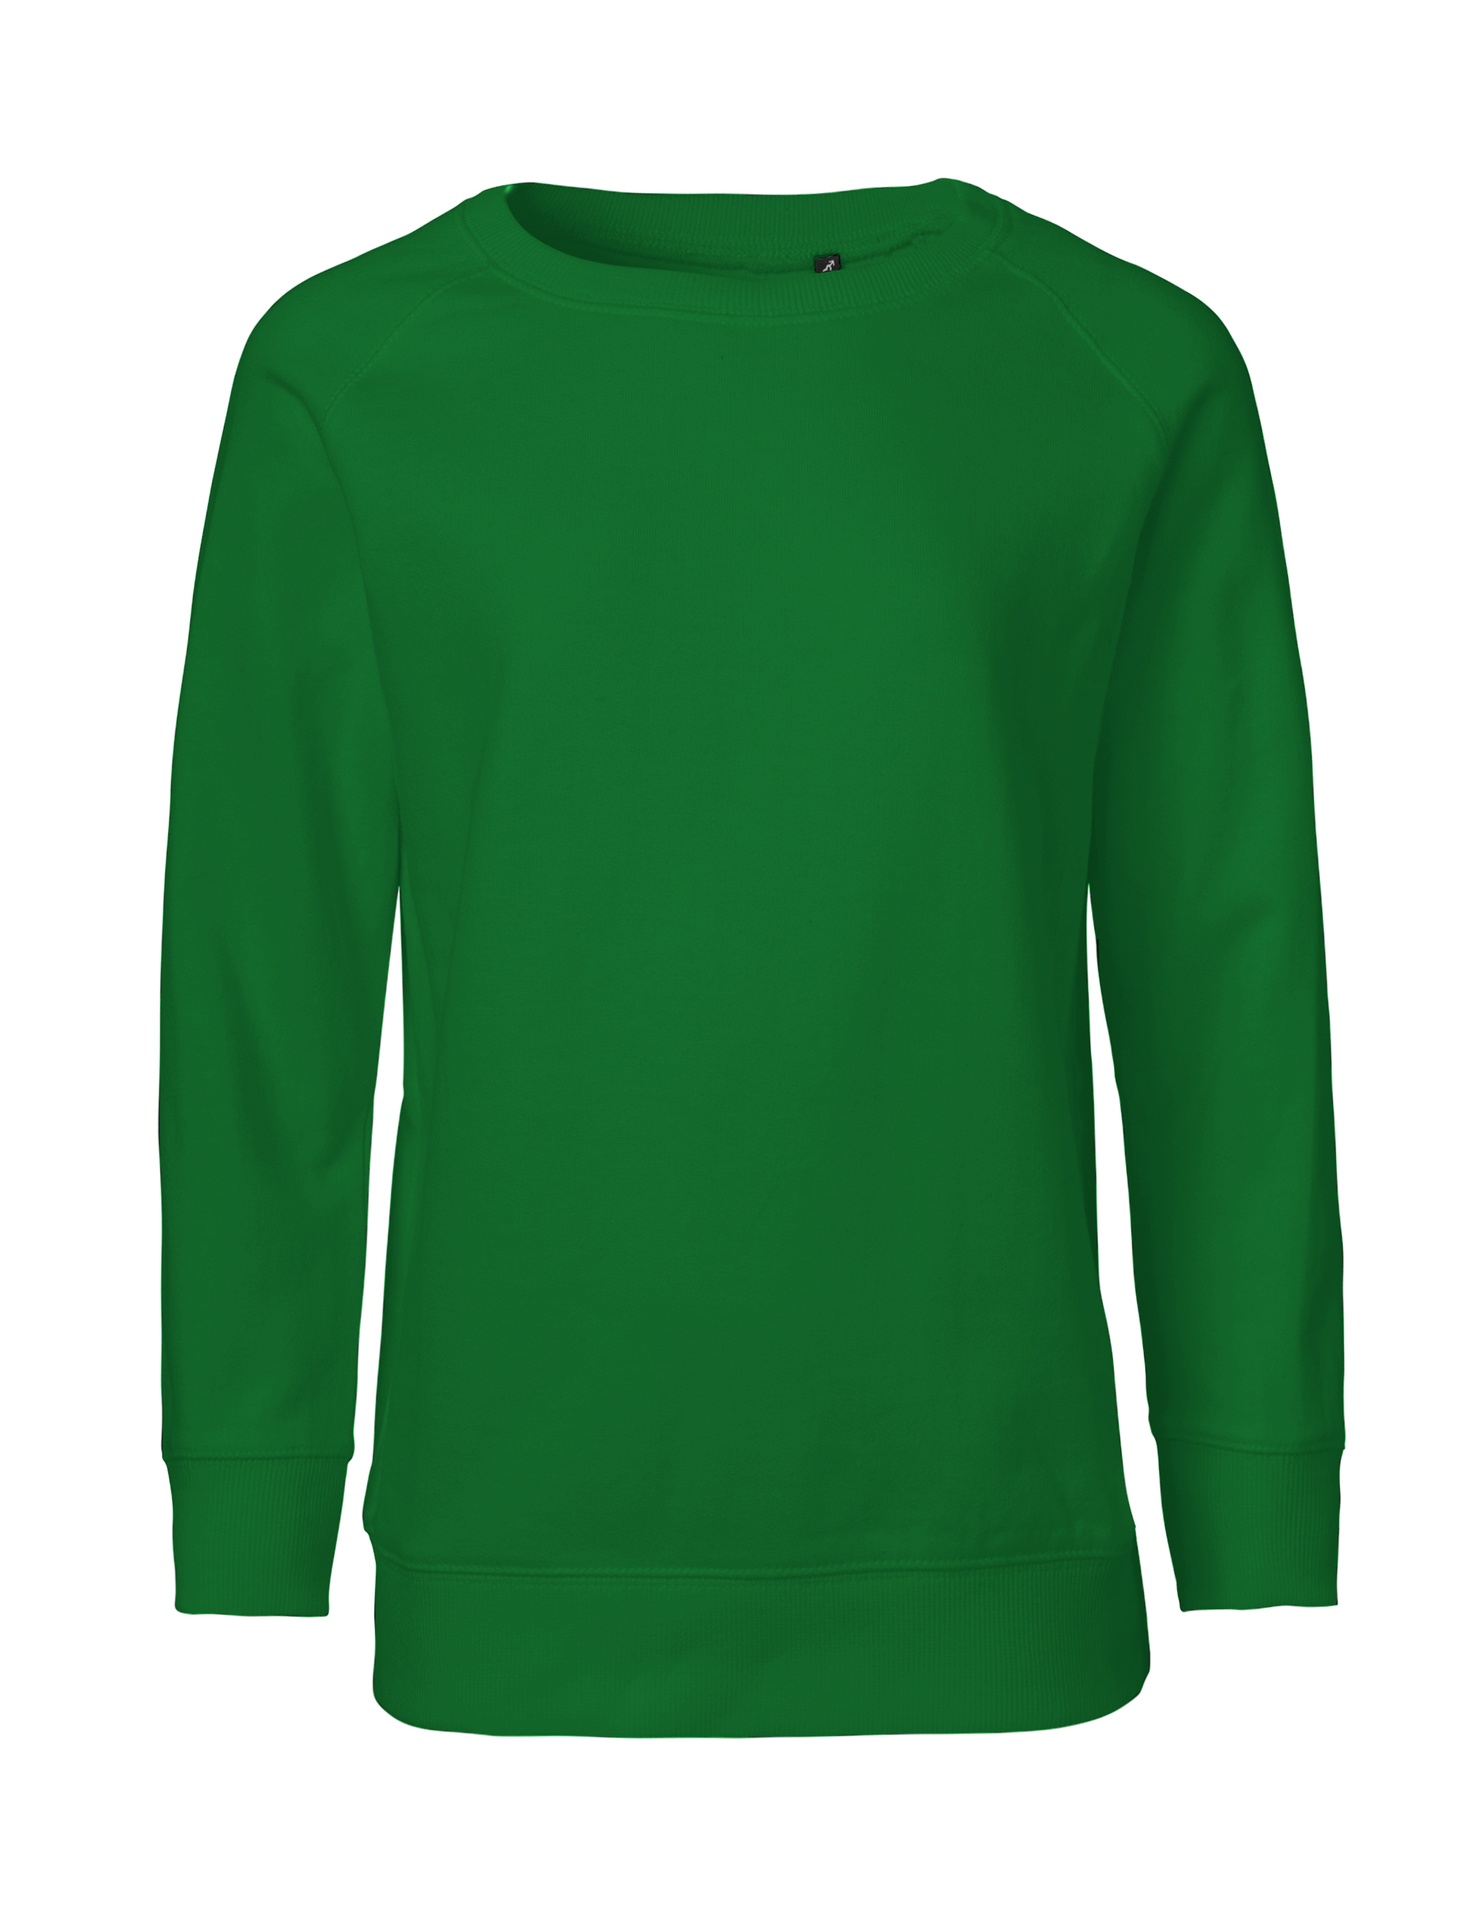 [PR/05549] Kids Sweatshirt (Green 67, 128/134 cm)